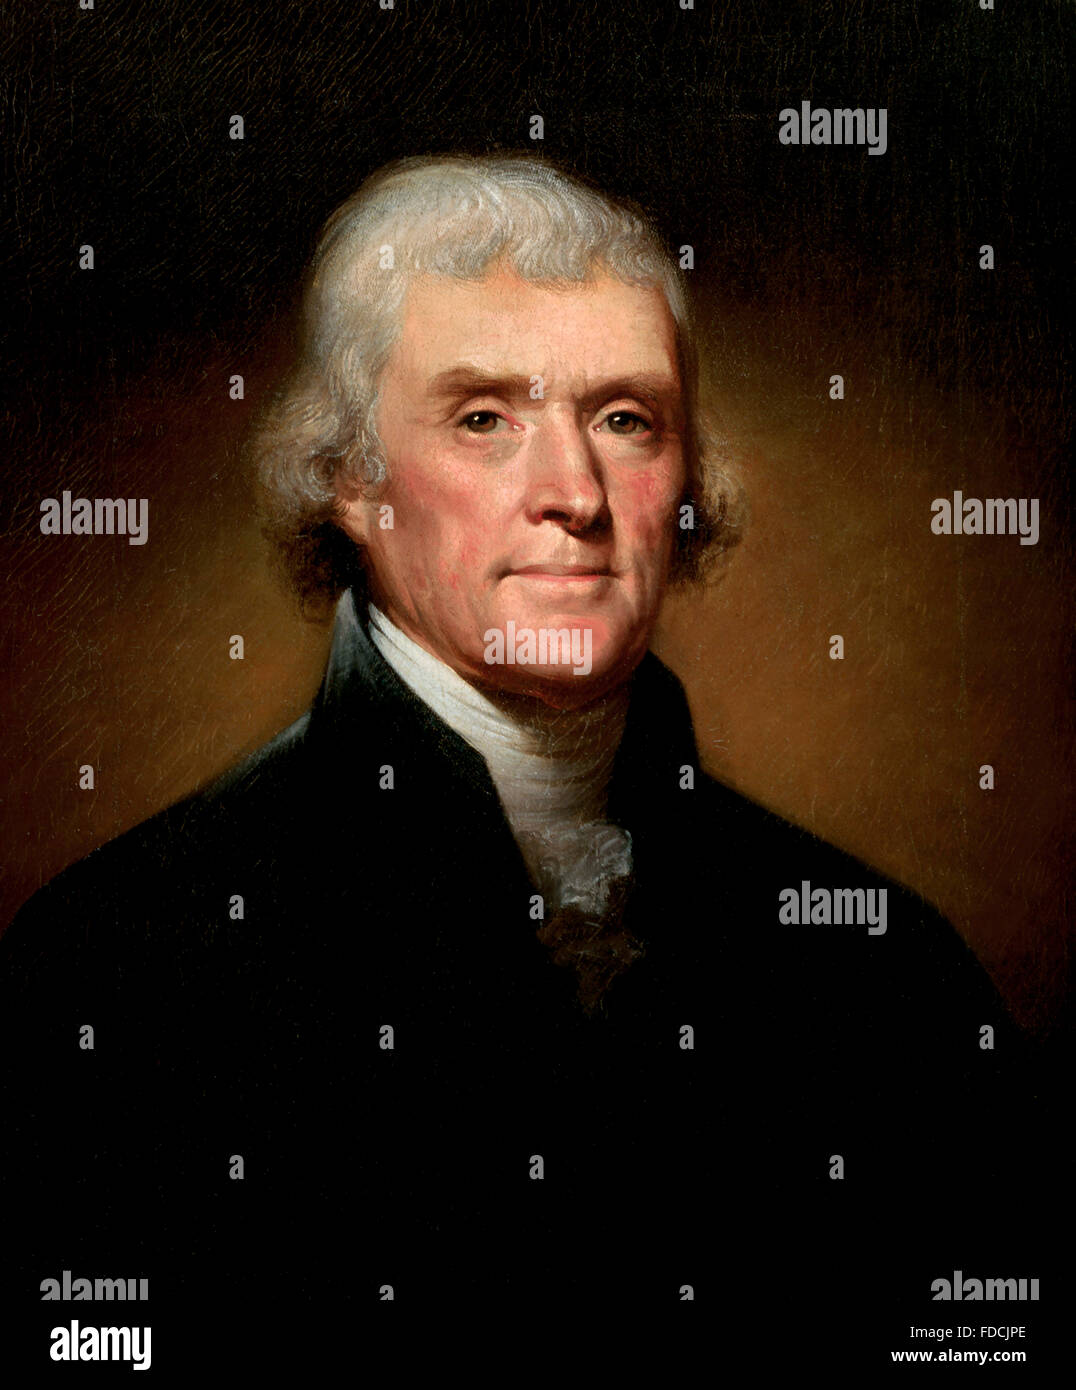 Thomas Jefferson. Ritratto di Rembrandt Peale del terzo presidente americano Thomas Jefferson, 1800 Foto Stock